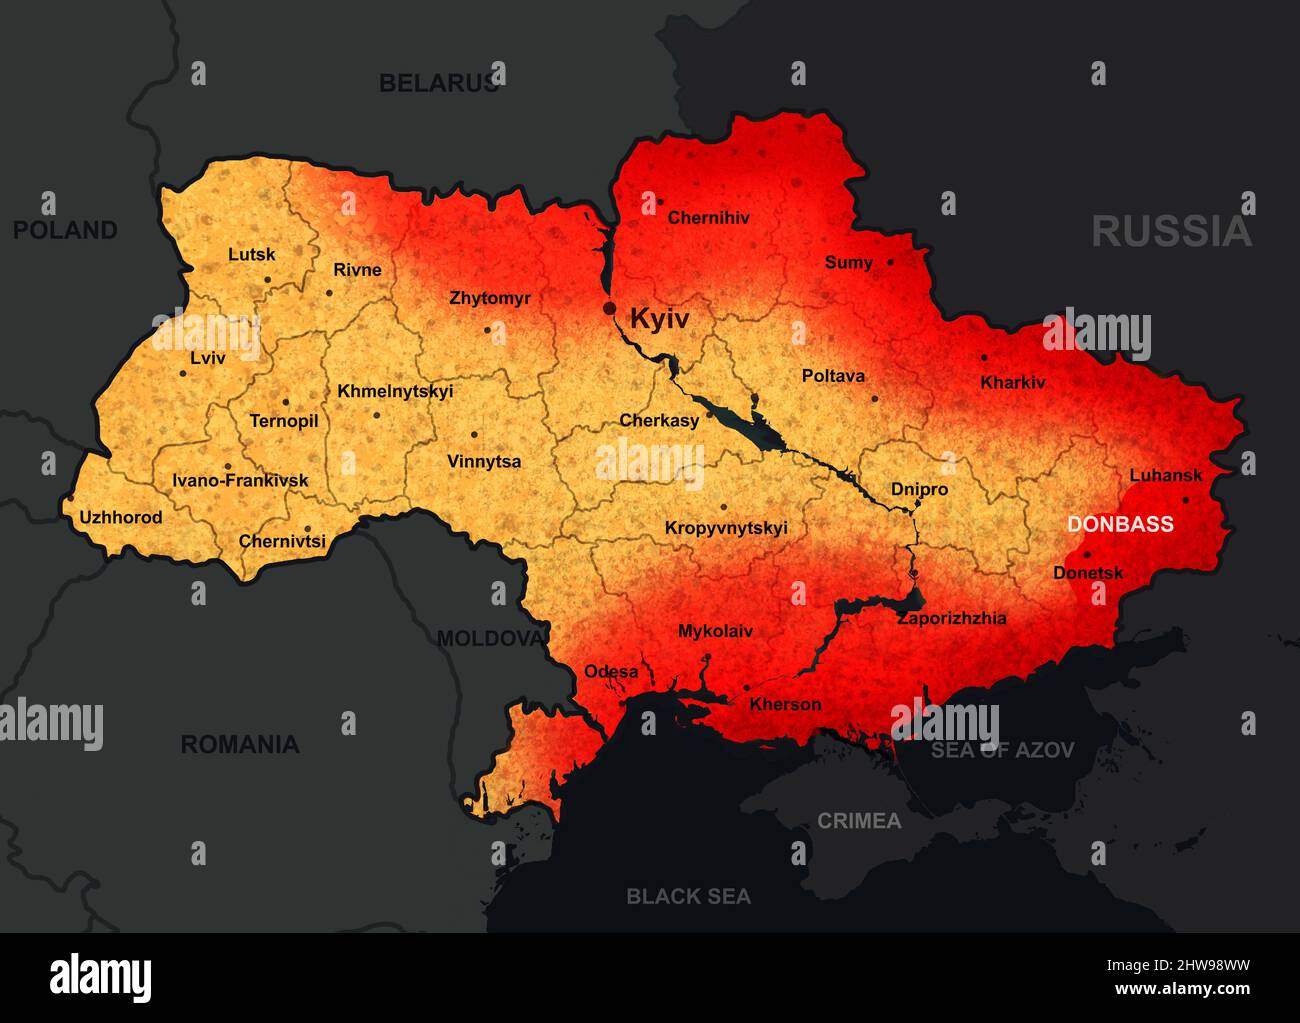 La guerre en Ukraine sur la carte, illustration de l'invasion russe générale en Ukraine. Territoire ukrainien et frontières avec la région de Donbass. Russie-Ukraine confli Banque D'Images